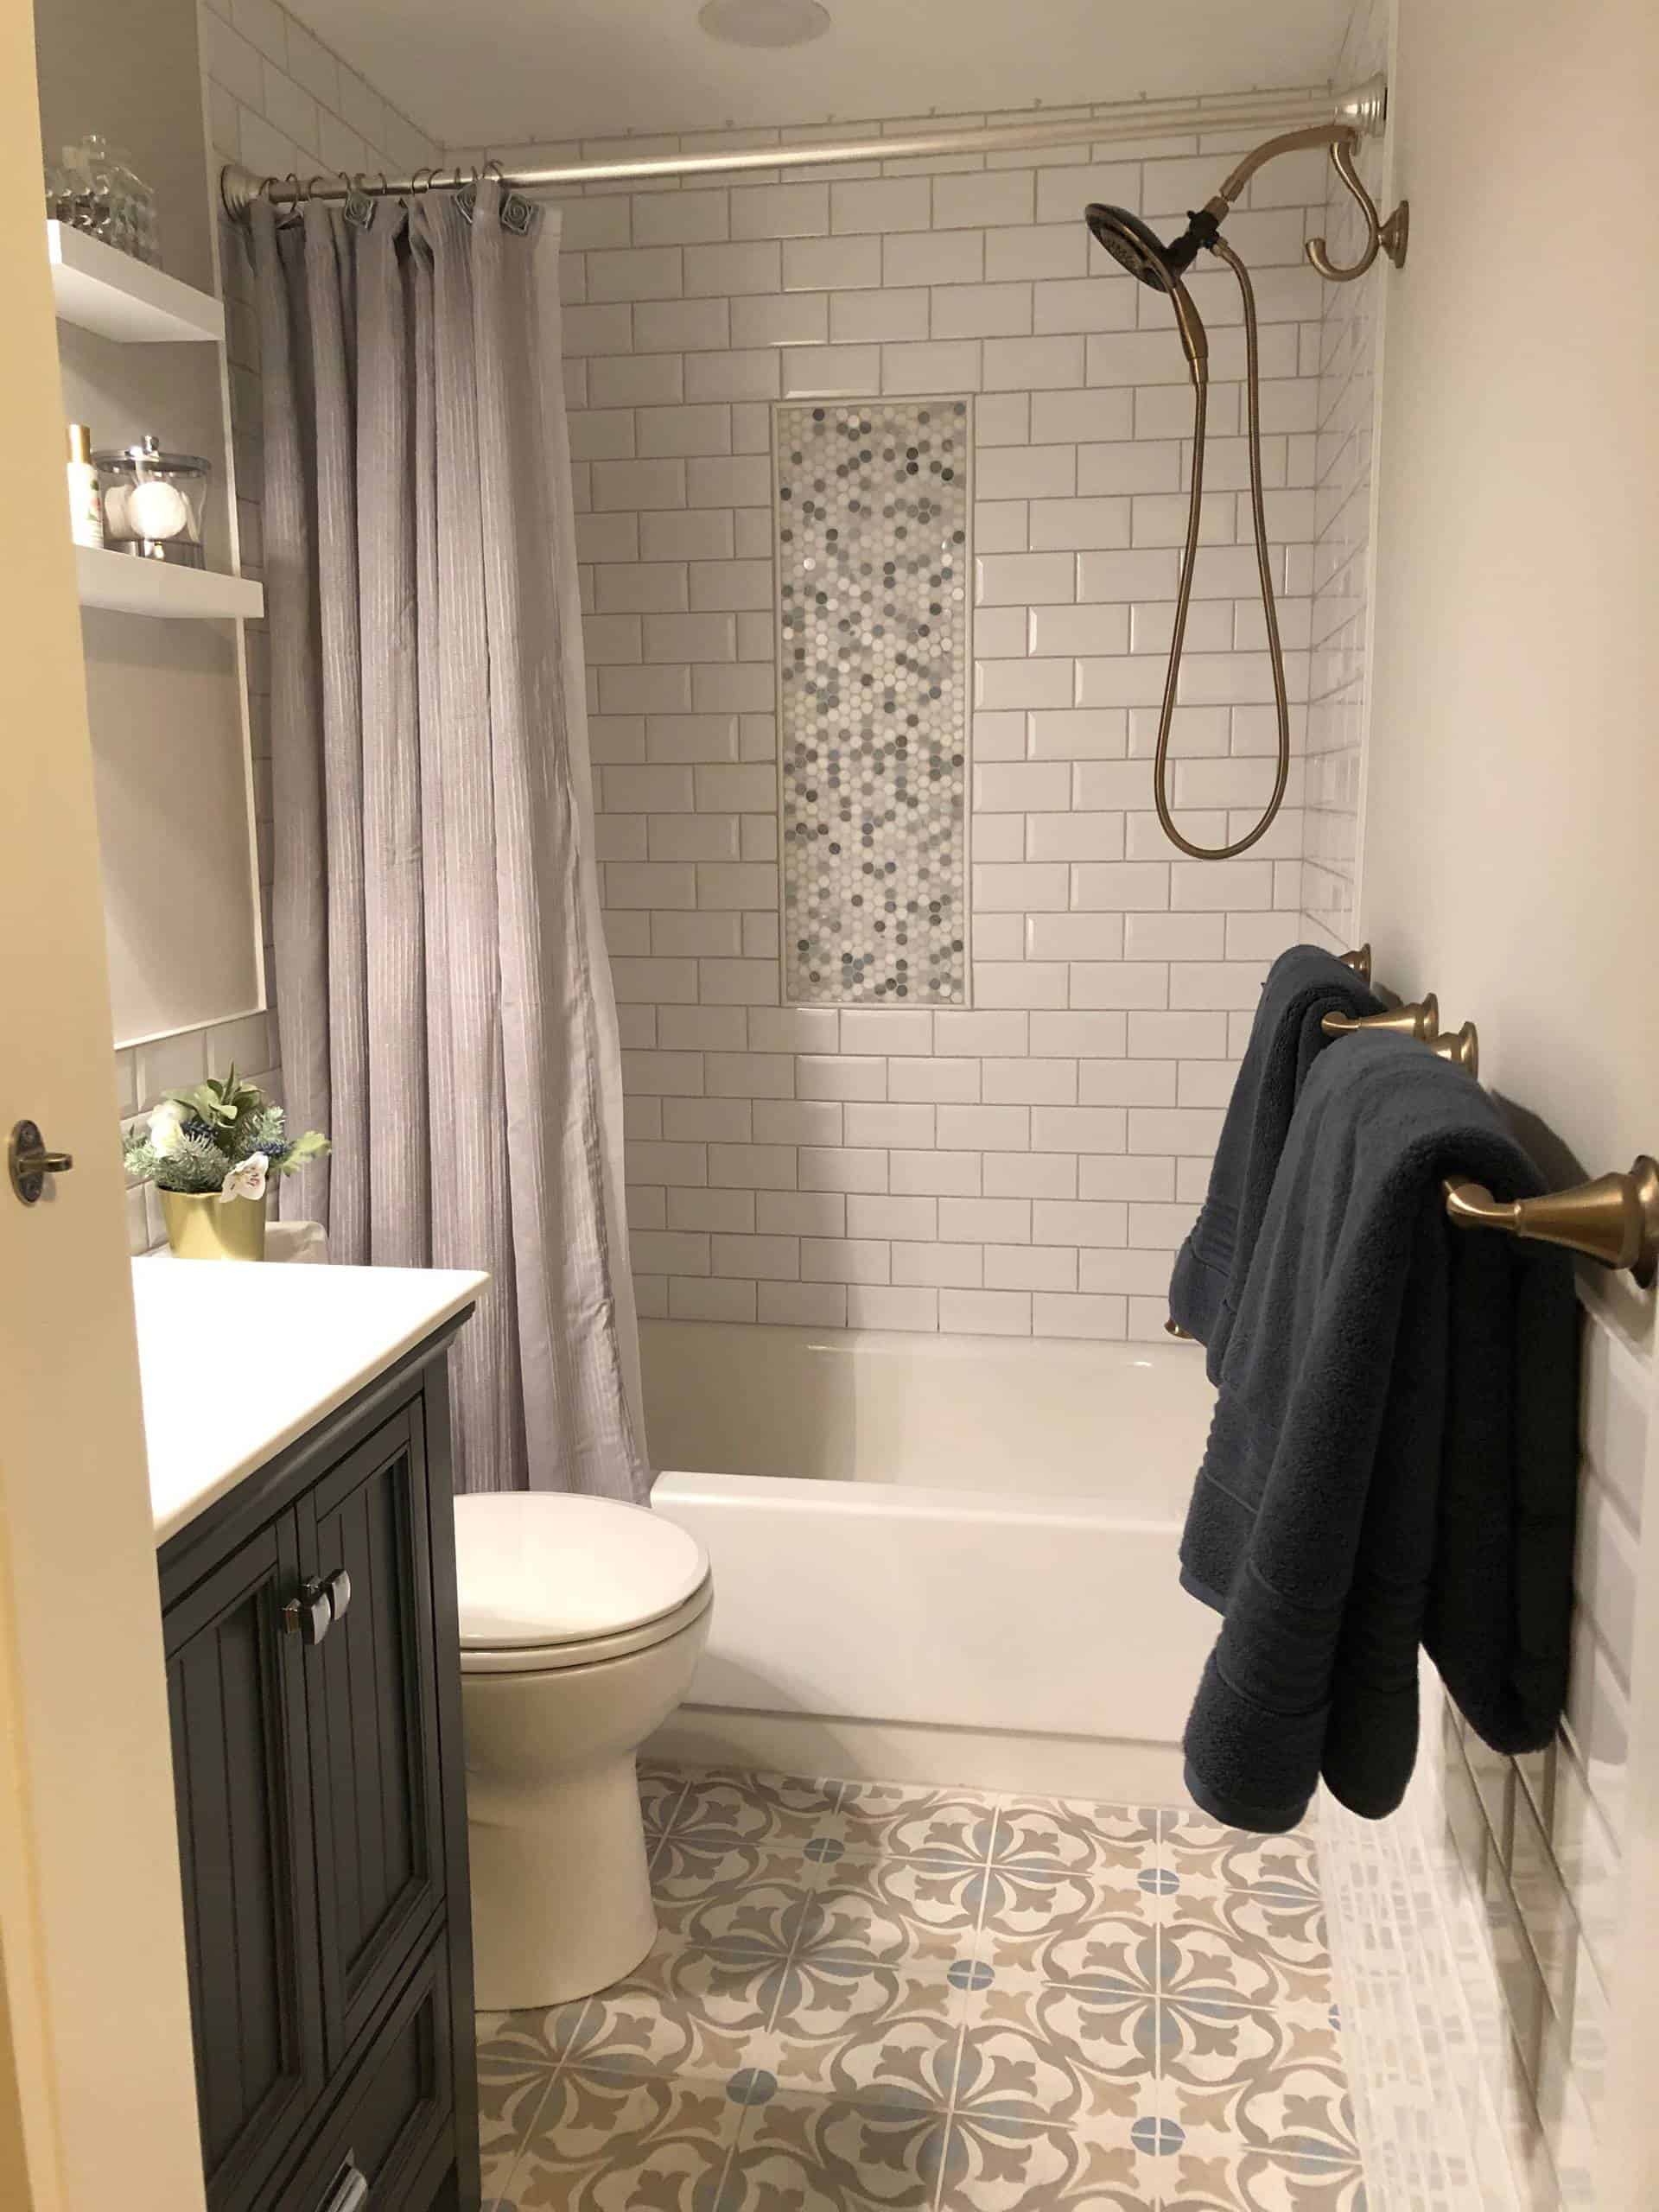 28 Small Bathroom Ideas with Bathtubs for 2021 - 03 Small Bathroom Showers Decorsnob 1